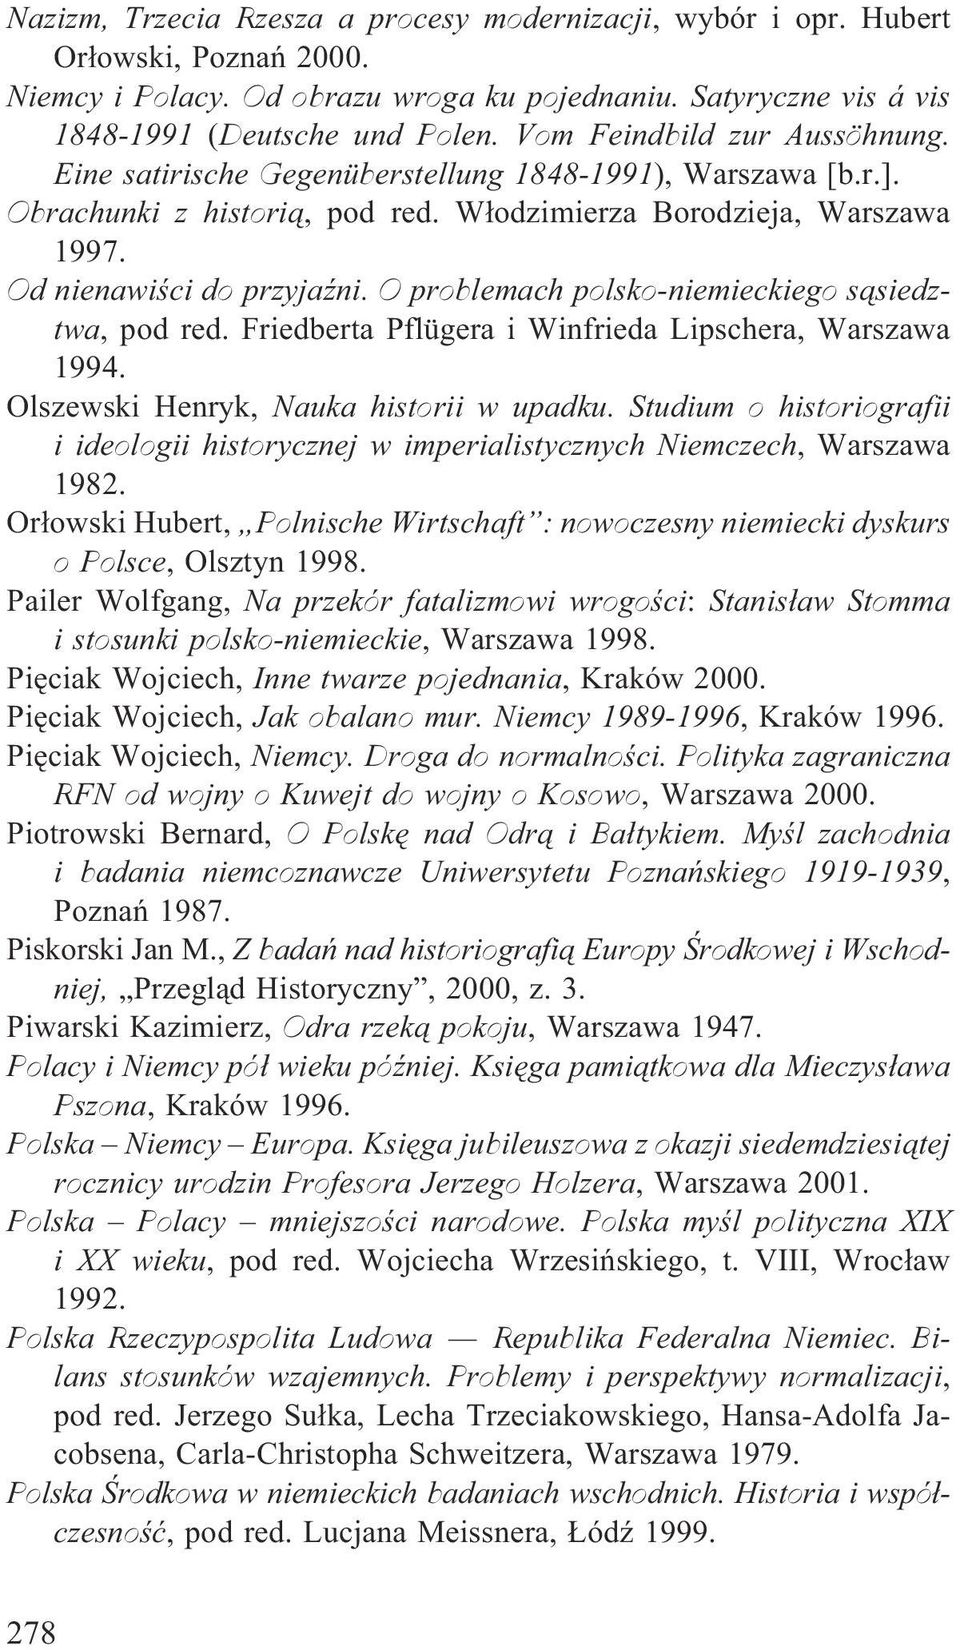 O problemach polsko-niemieckiego s¹siedztwa, pod red. Friedberta Pflügera i Winfrieda Lipschera, Warszawa 1994. Olszewski Henryk, Nauka historii w upadku.